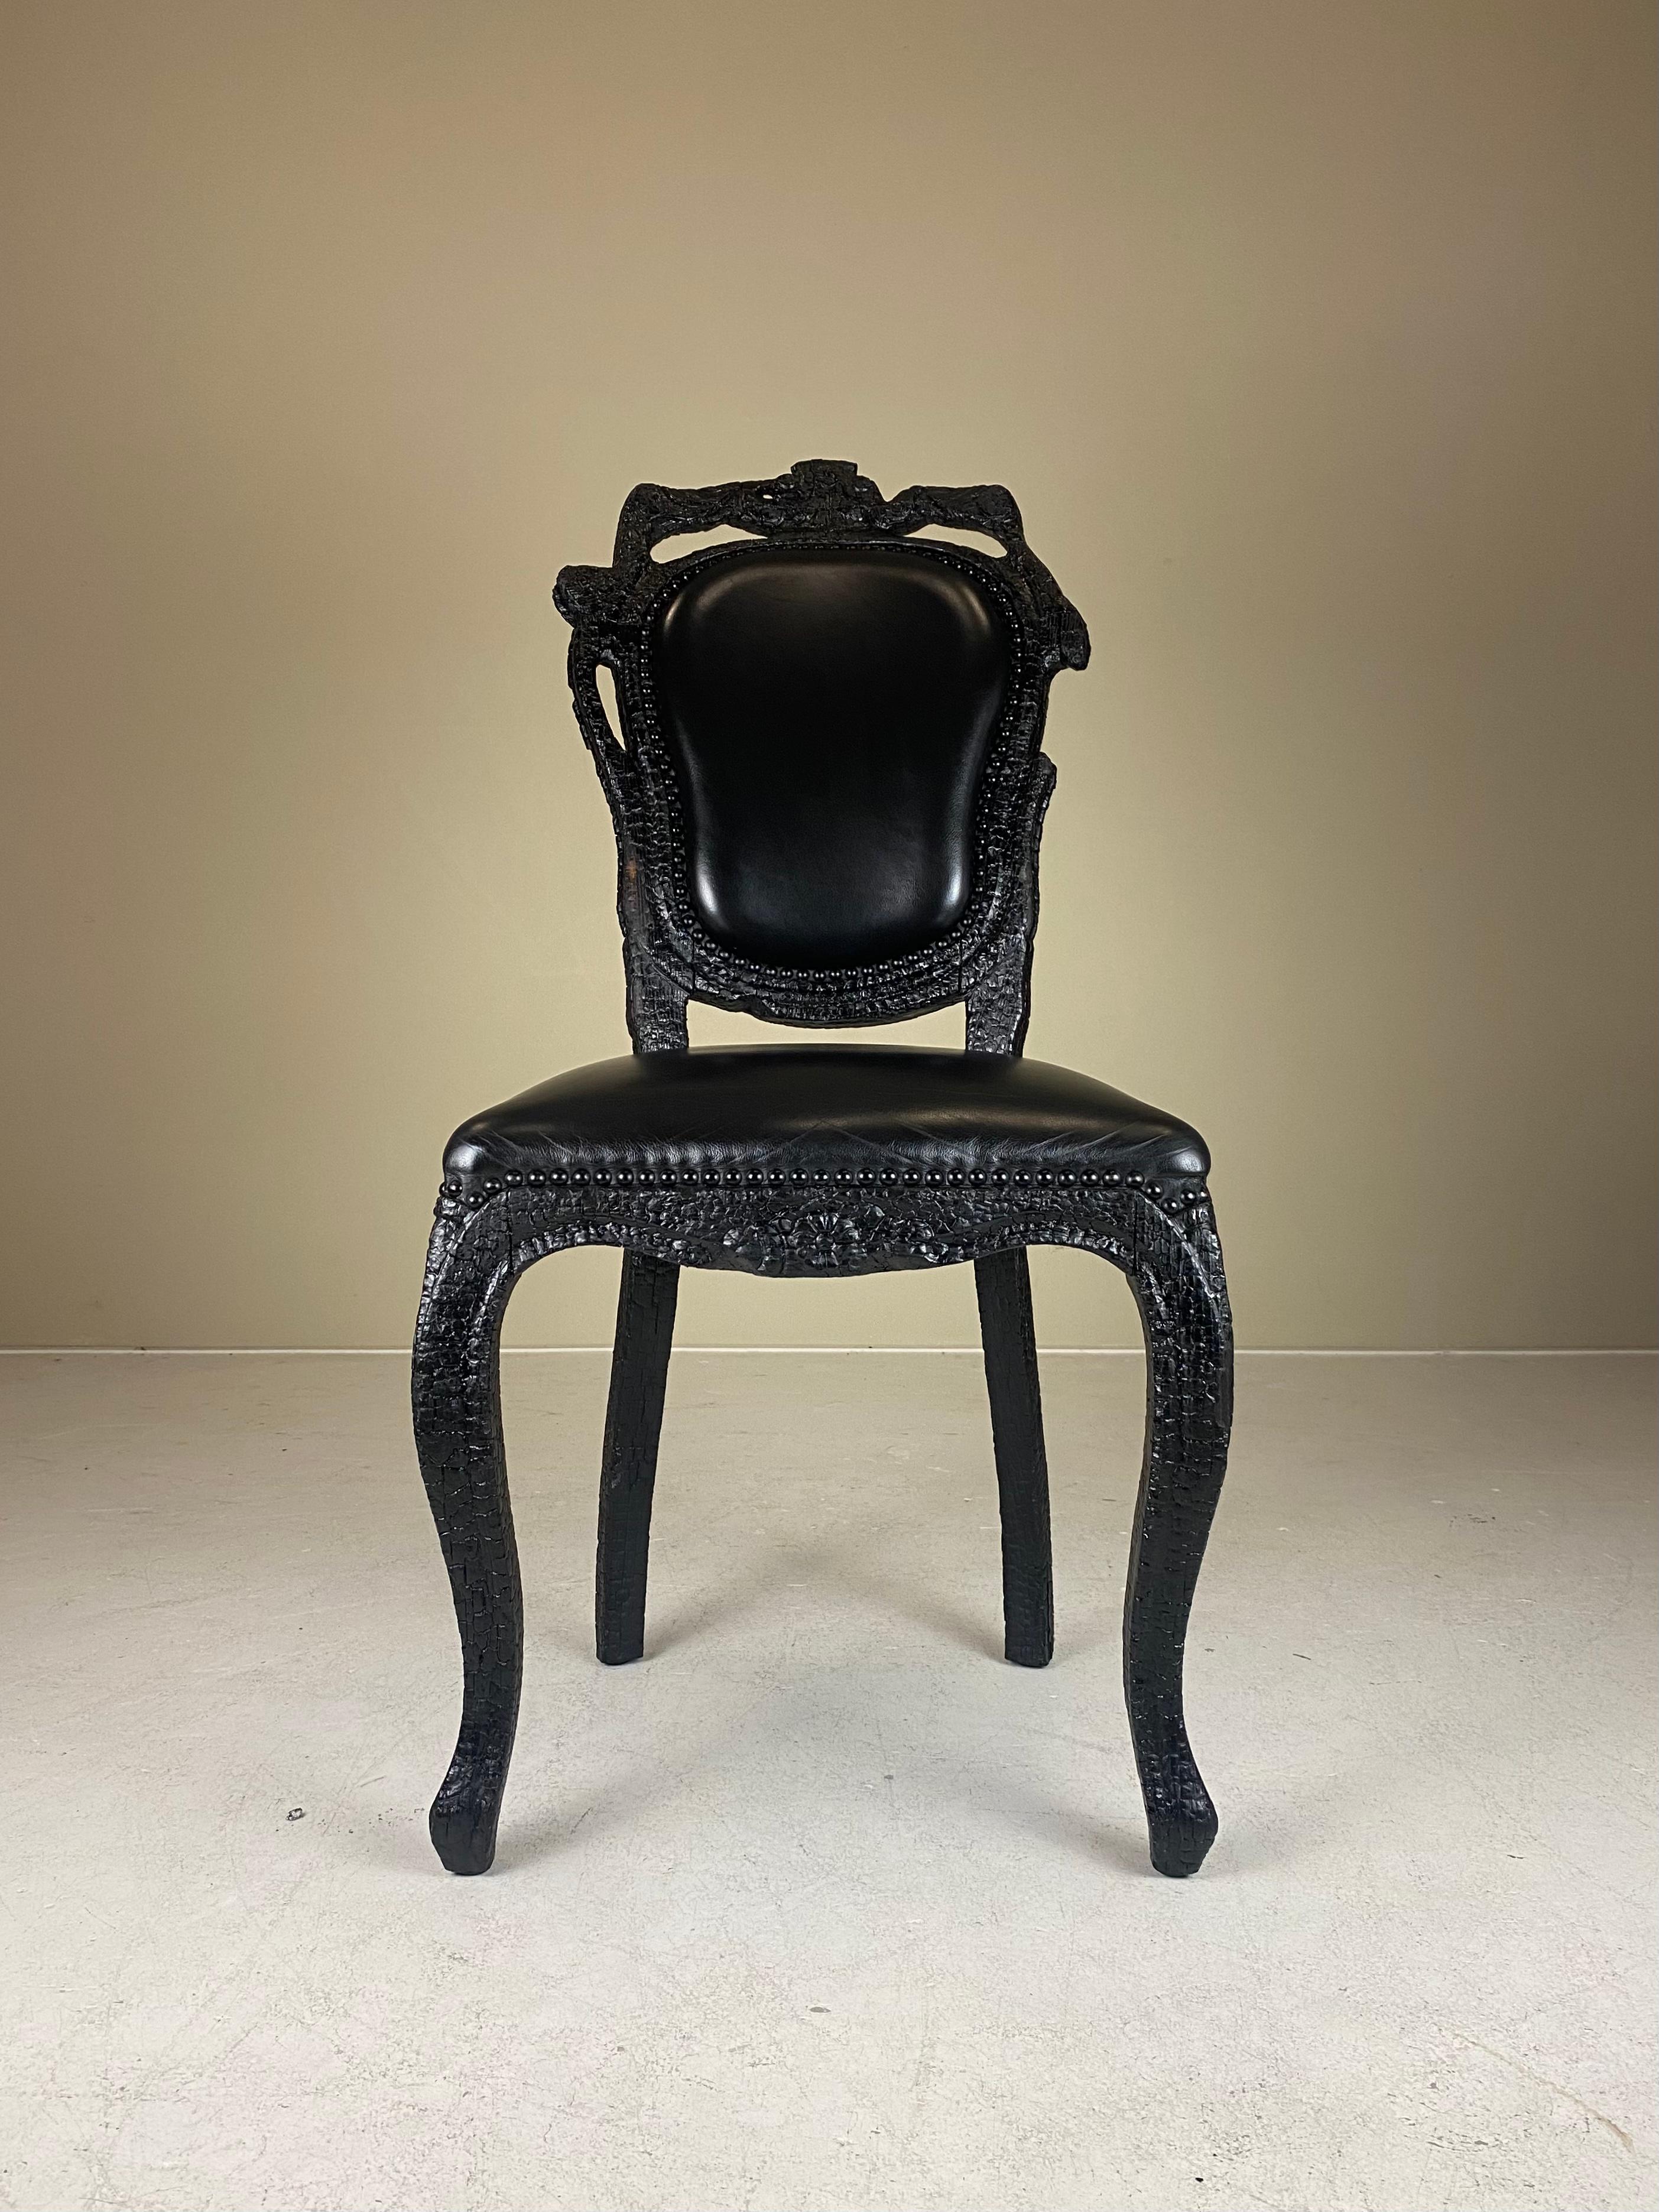 Die 2003-2004 von Moooi hergestellten Smoke Chairs von Maarten Baas bestehen aus teurem Leder in einem Rahmen aus gebranntem Holz - eine wirklich originelle und einzigartige Materialwahl. Smoke war Baas' Abschlussarbeit an der Design Academy